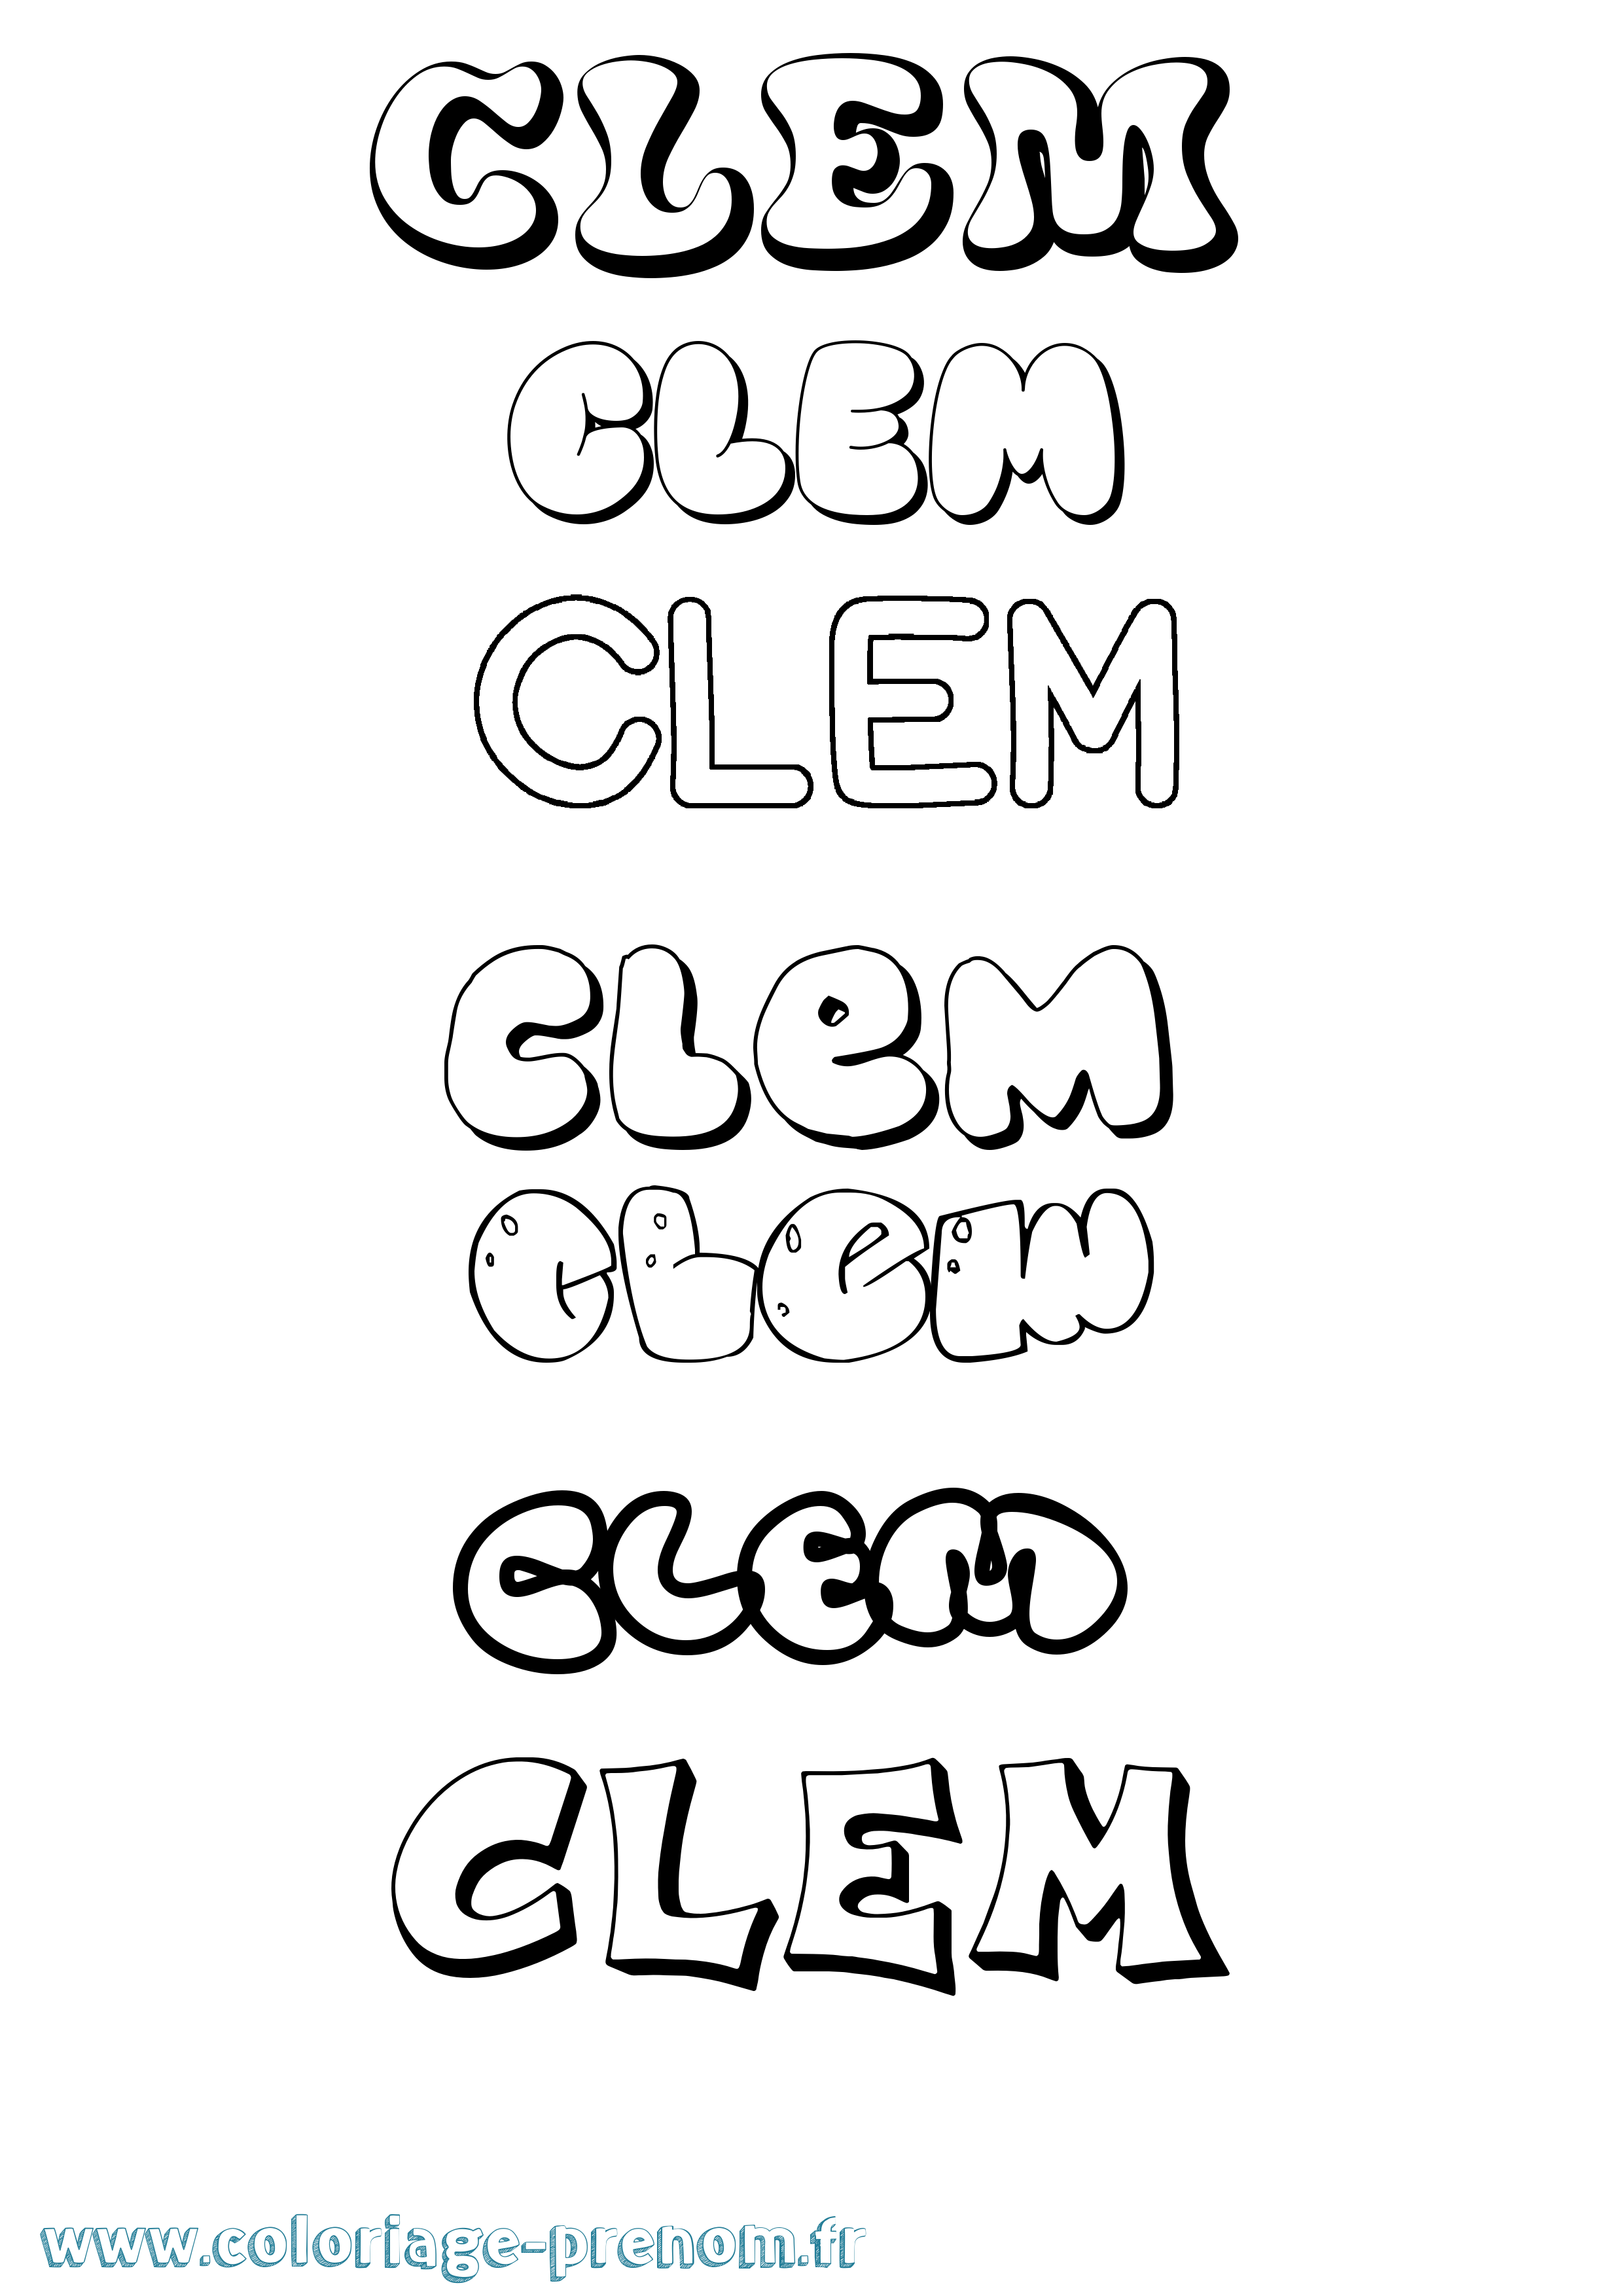 Coloriage prénom Clem Bubble